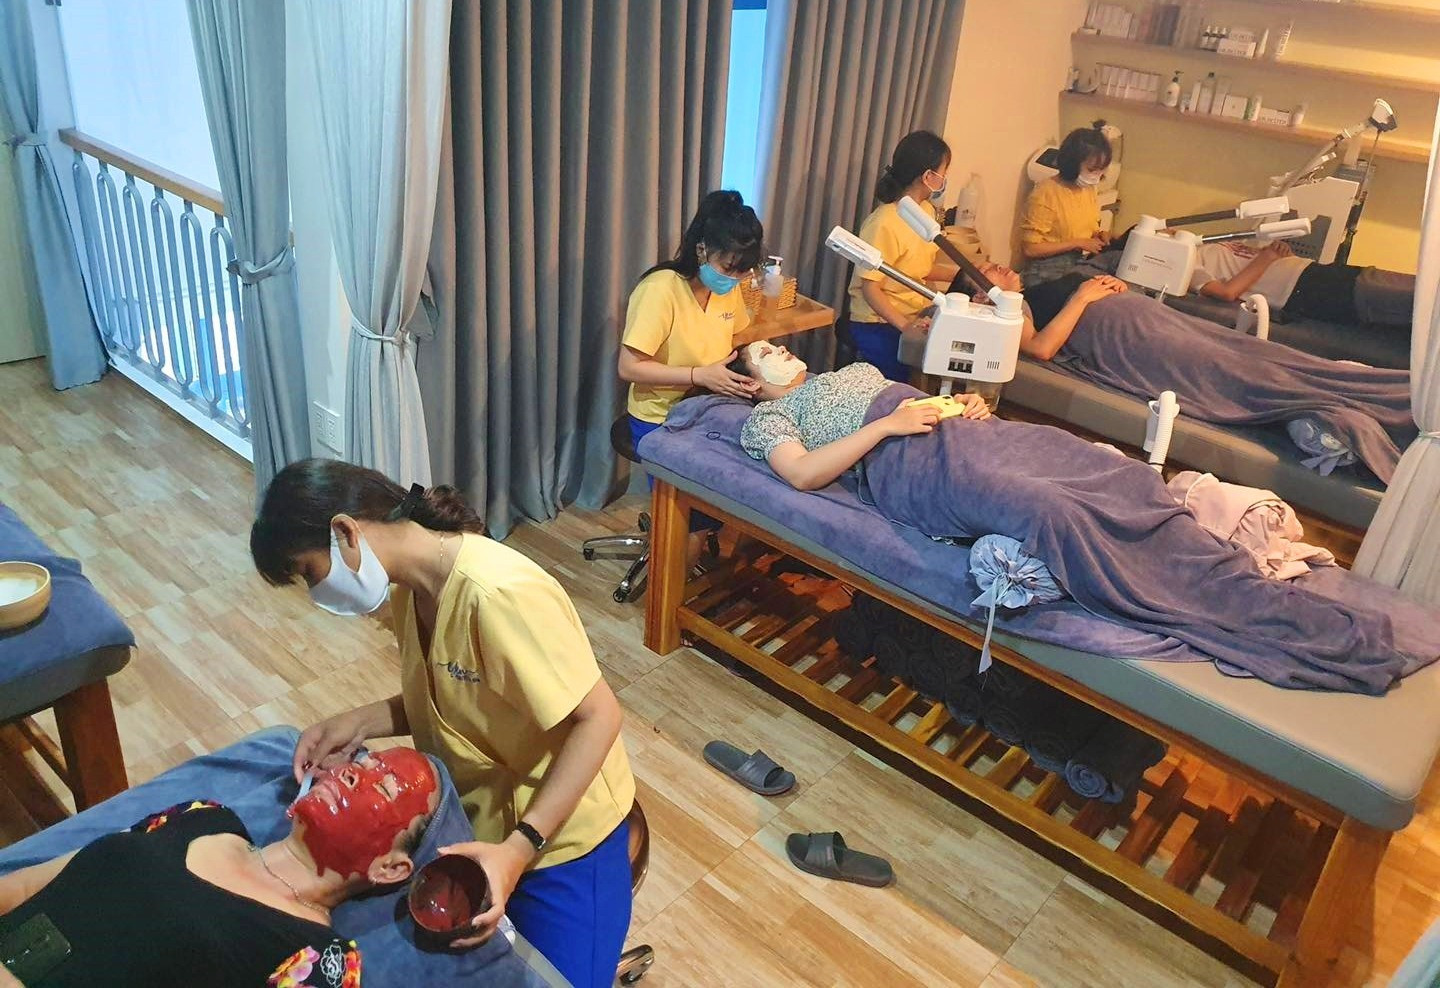 Đội ngũ nhân viên chuyên nghiệp và lành nghề chăm sóc khách hàng tại Yên Beauty & Spa của chị Hồng Trinh. Ảnh: KL